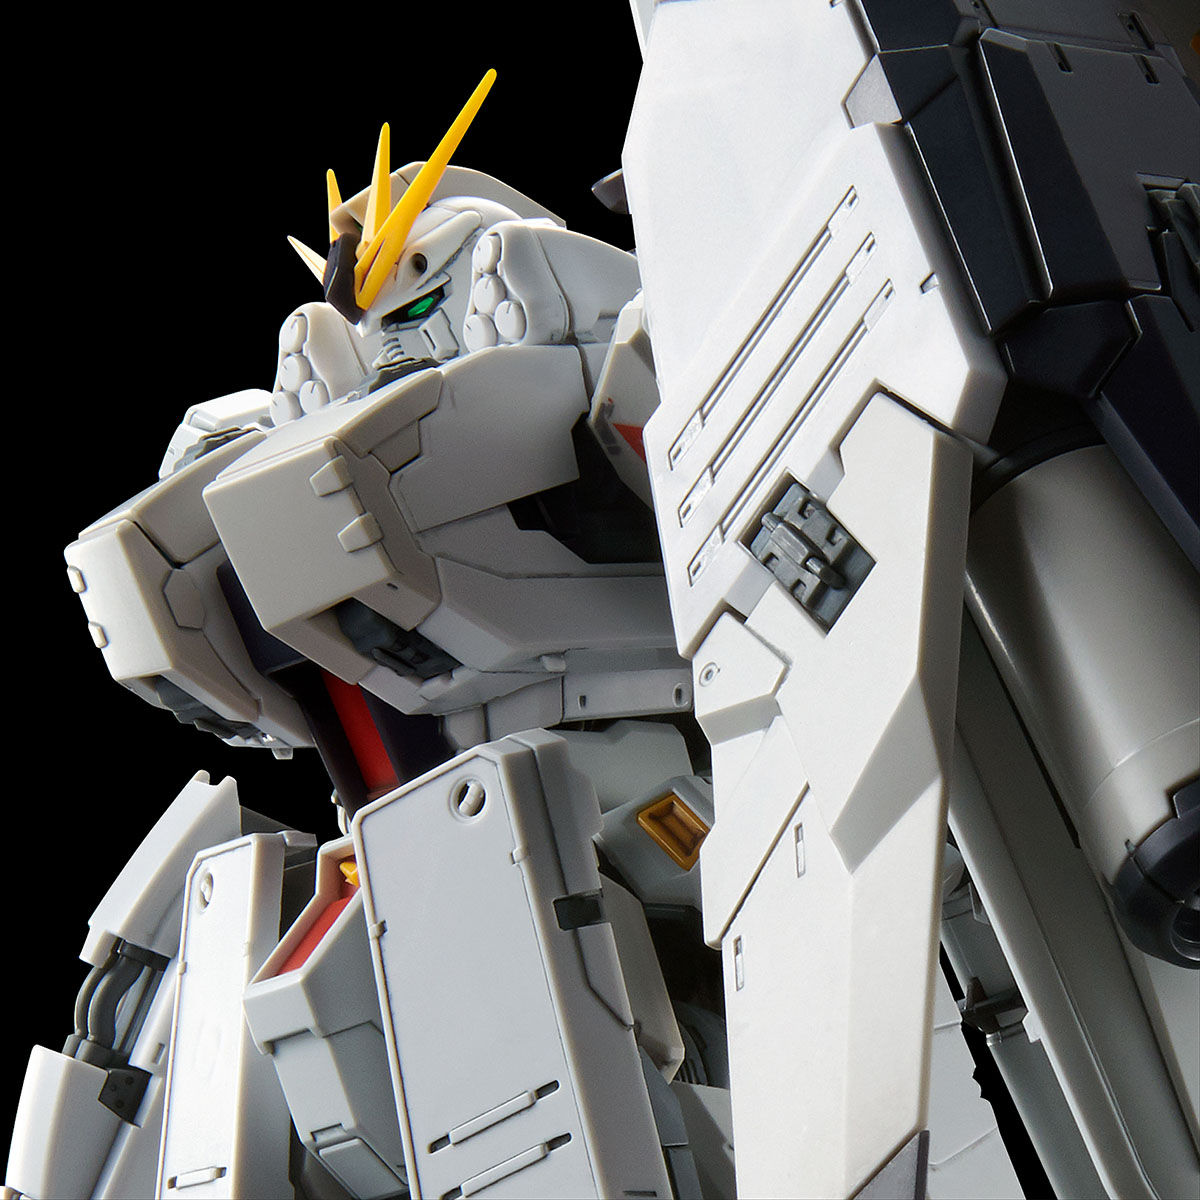 RG 1/144 FA-93HWS ν Gundam Heavy Weapon System